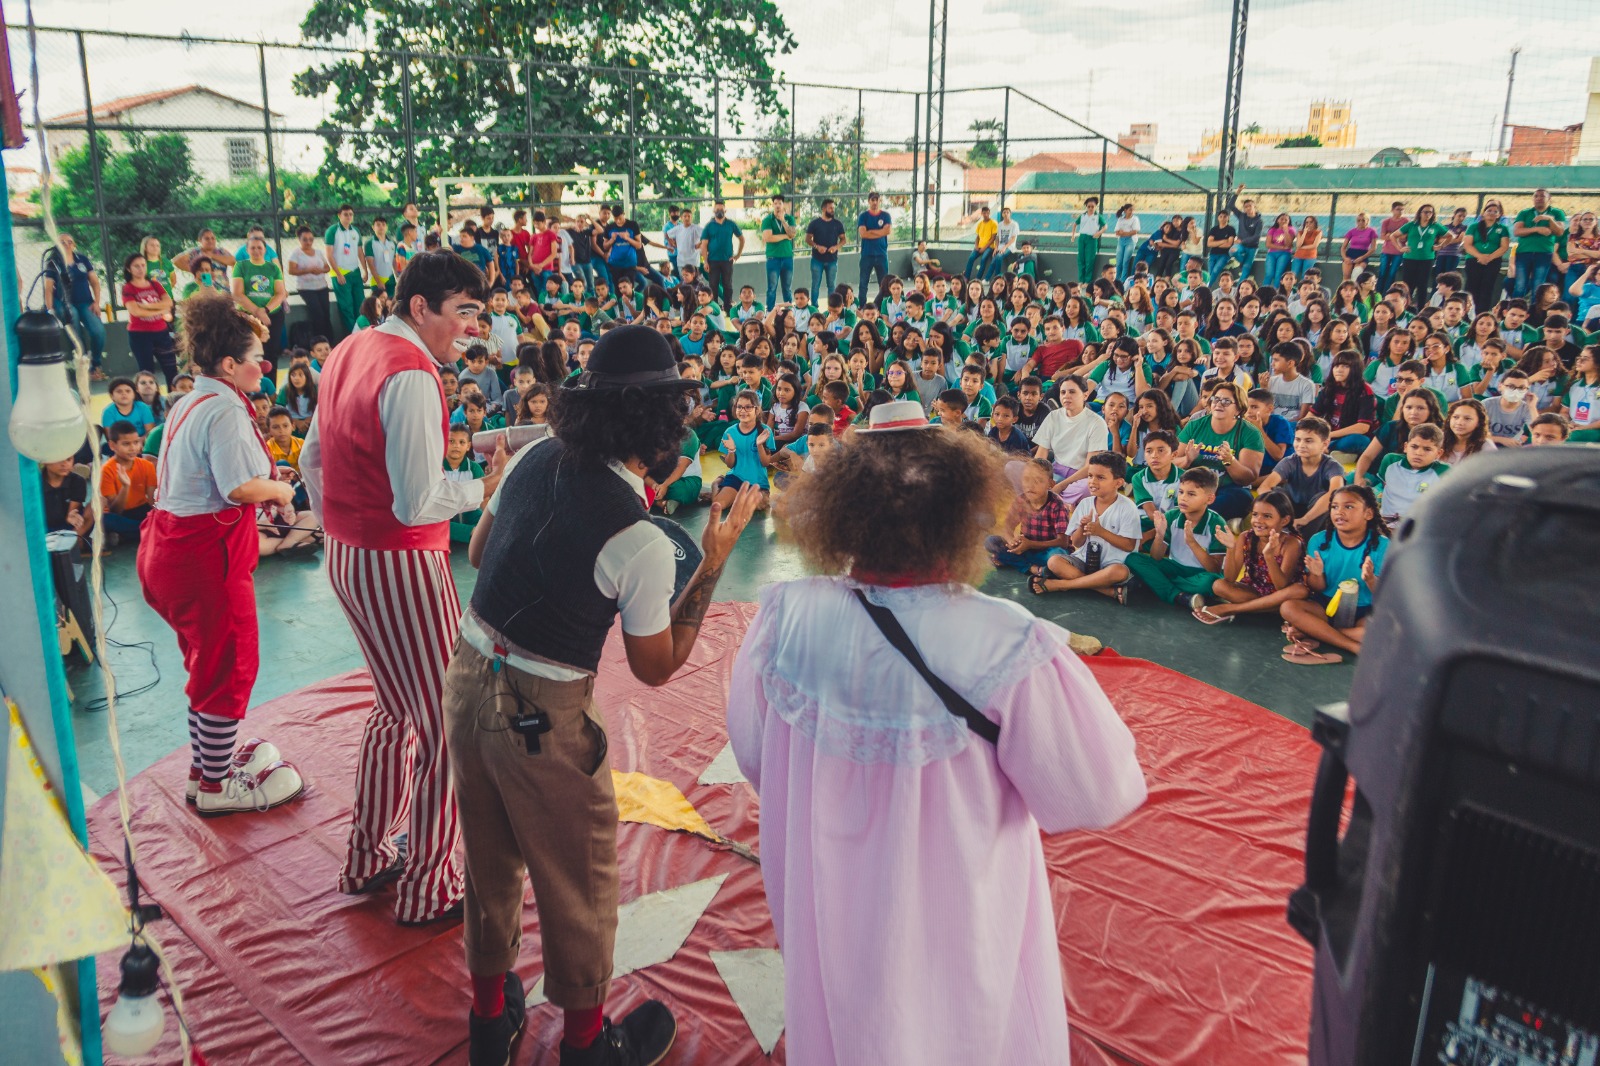 Grupo K’Os Coletivo realiza semana de espetáculos e oficinas em escolas de Fortaleza